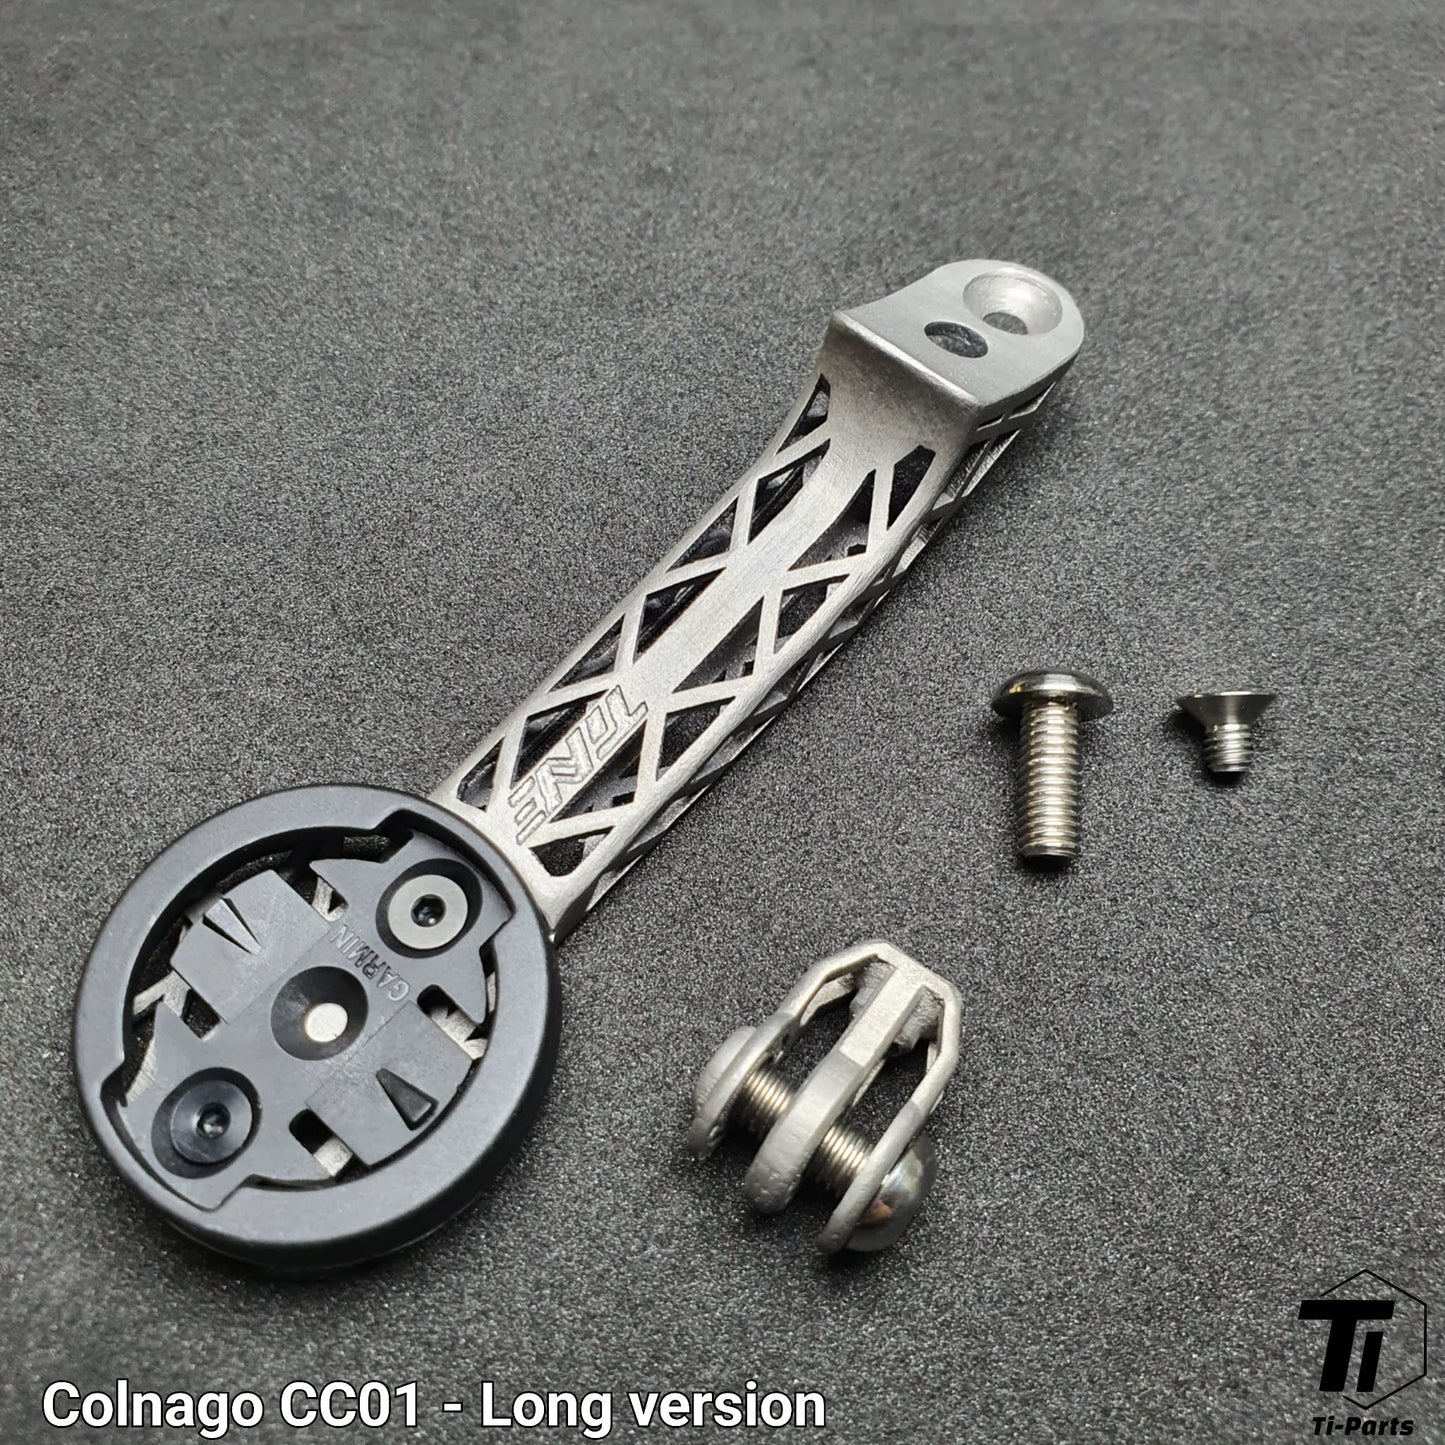 Βάση υπολογιστή Colnago CC01 Titanium 3D Print | Στήριγμα GoPro Light για Garmin Wahoo Super Lightweight